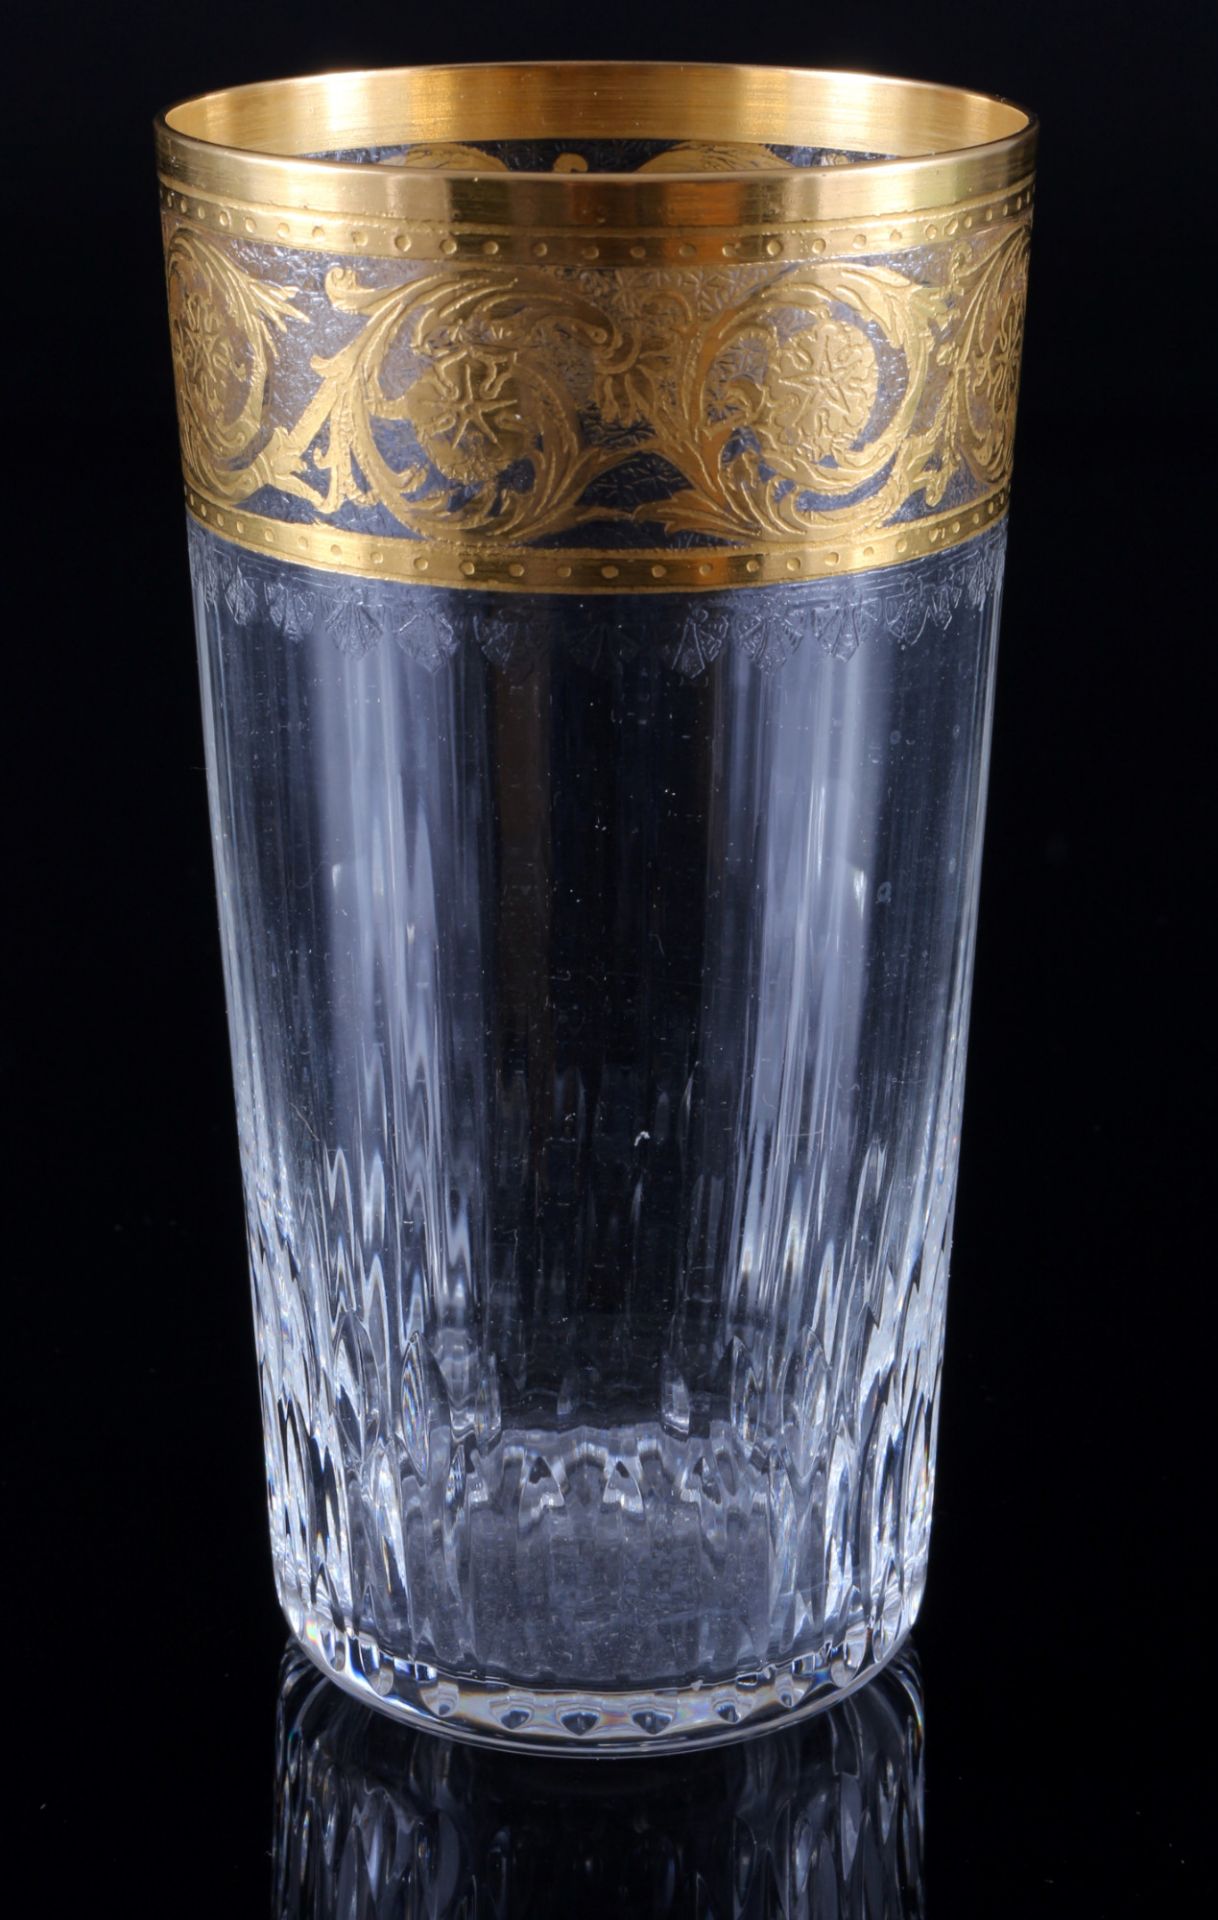 St. Louis Thistle Gold 6 highball glasses, Bechergläser, - Image 2 of 3